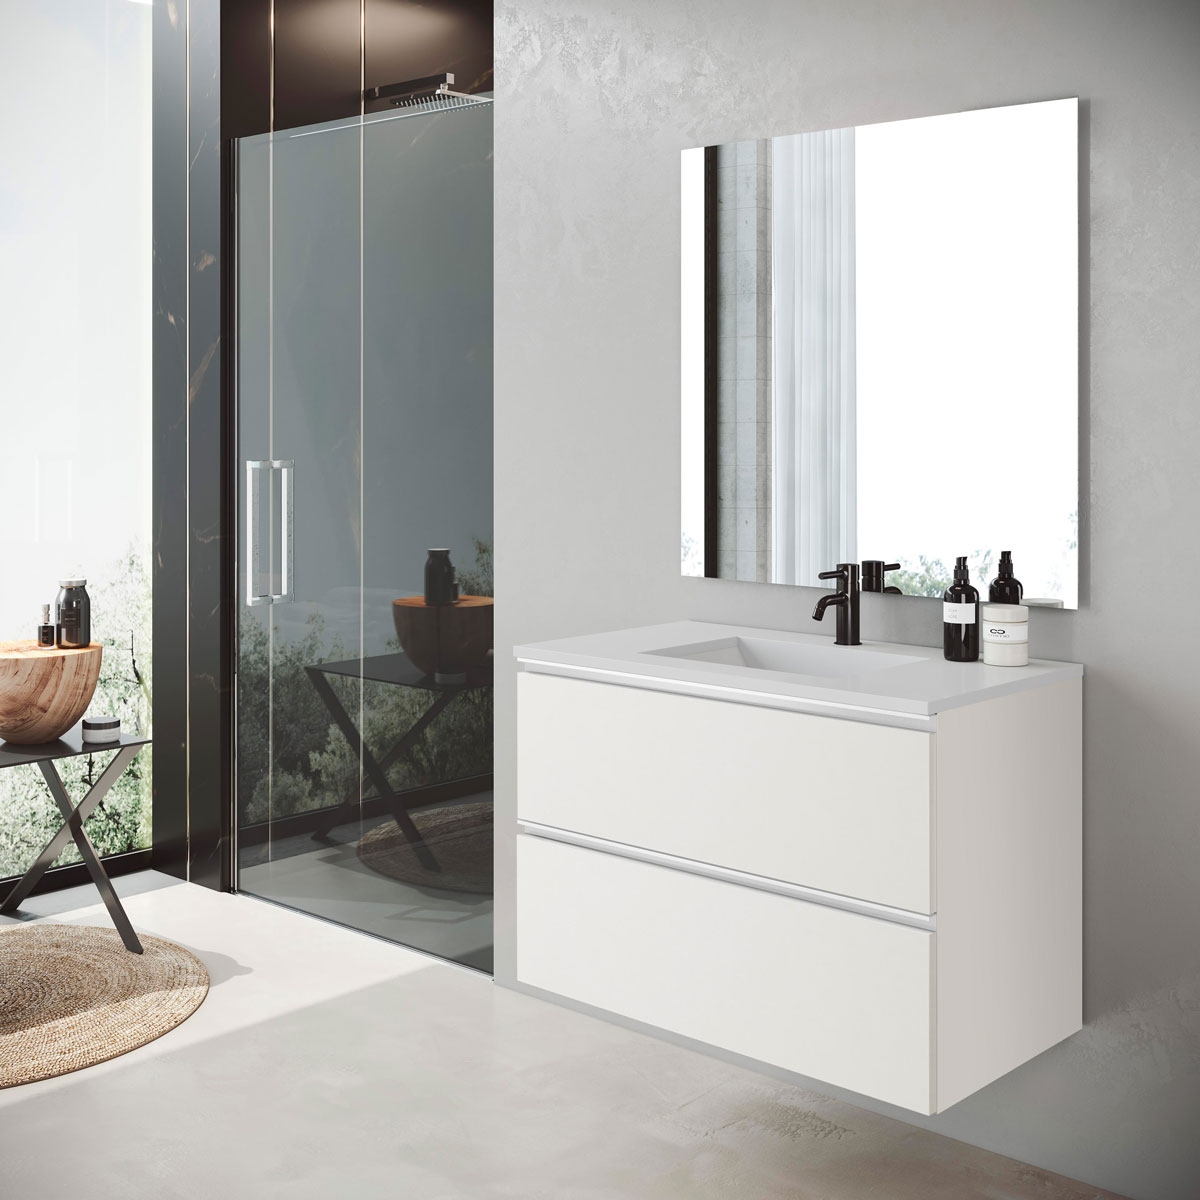 Mueble columna colgar de baño Dundee de 35 cm ancho color Blanco Lacado -  Comprar online al mejor precio.